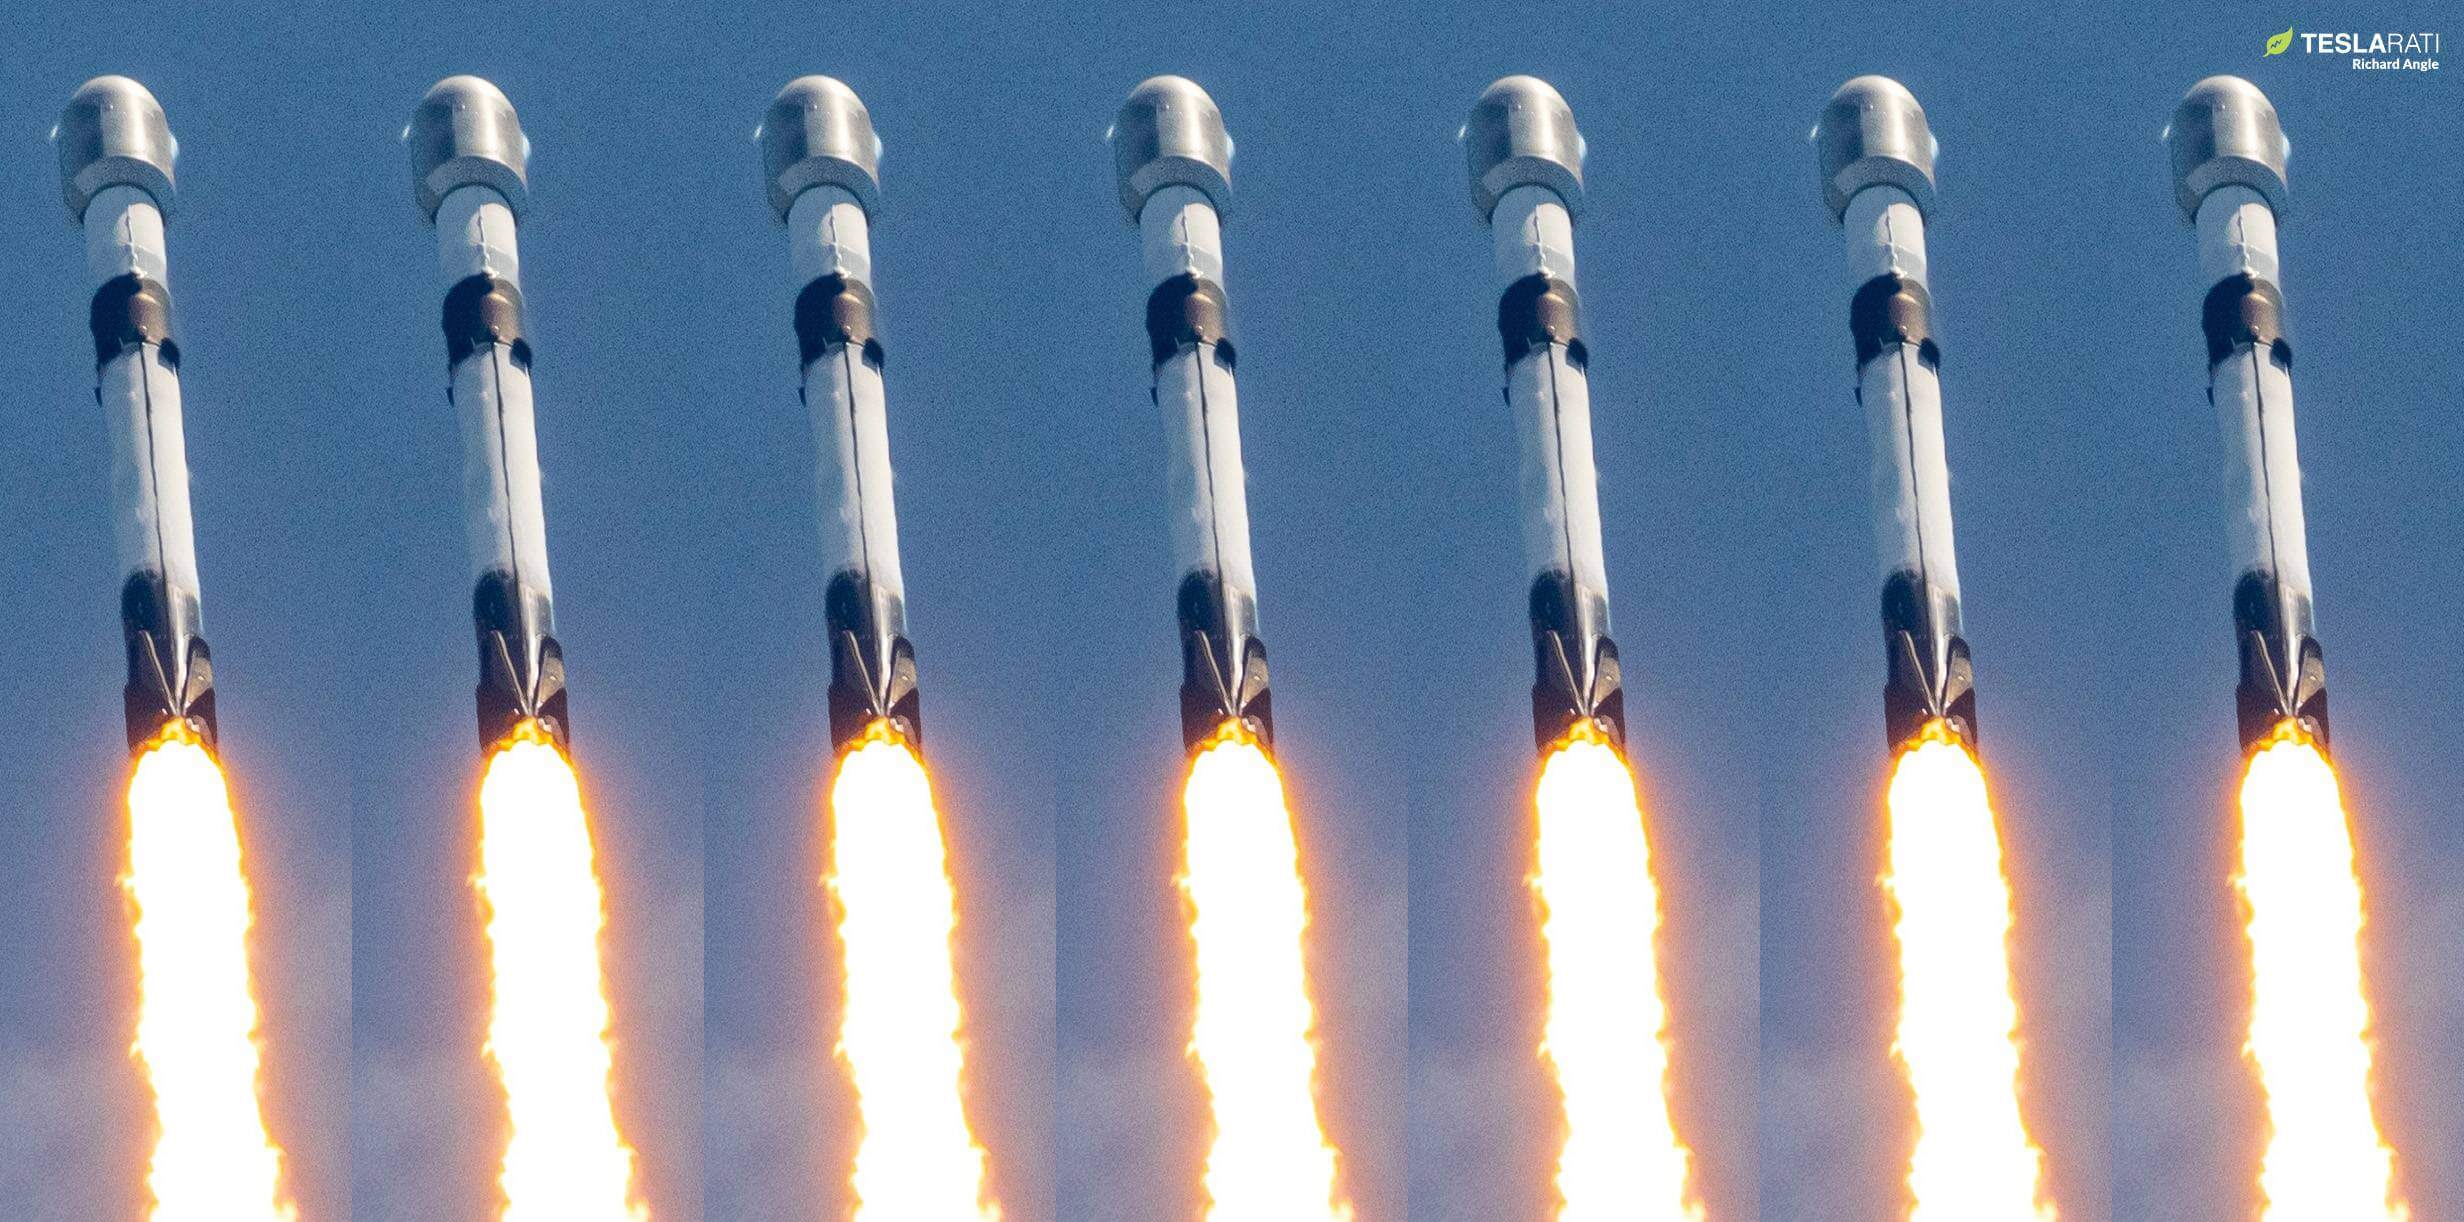 El objetivo de Elon Musk de 100 lanzamientos de SpaceX en 2023 parece sorprendentemente factible